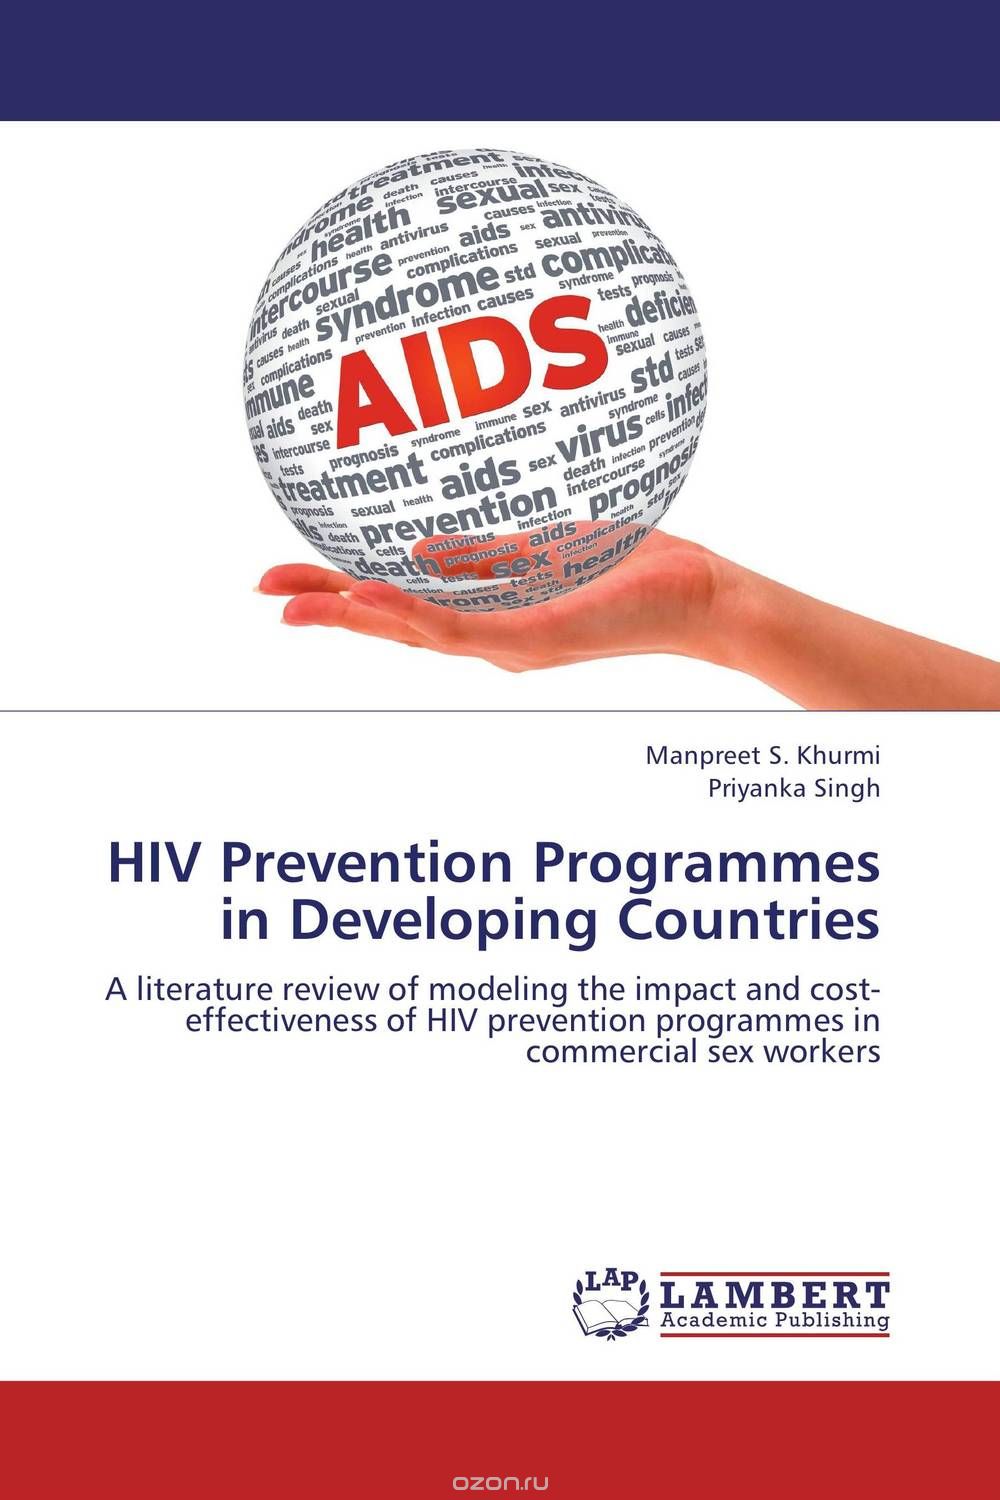 Скачать книгу "HIV Prevention Programmes in Developing Countries"